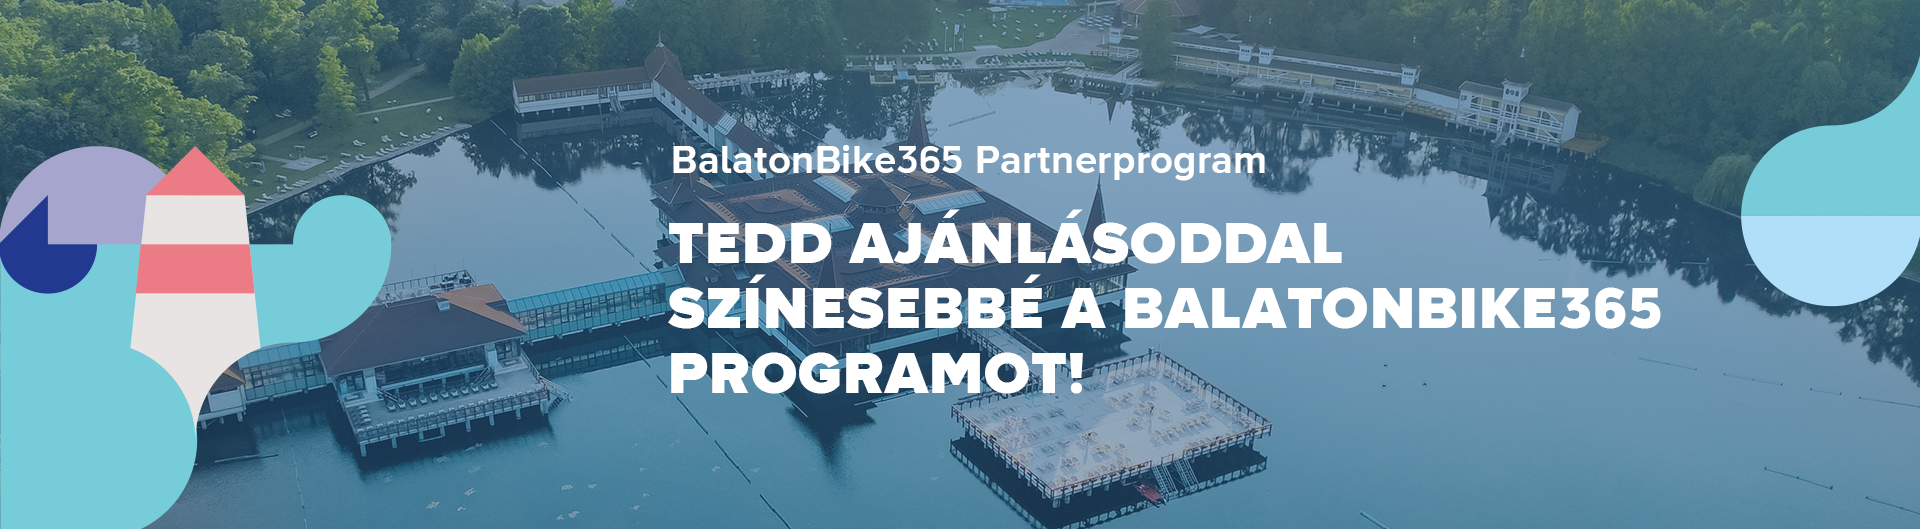 BalatonBike365 Partnerprogram_hero_szöveggel